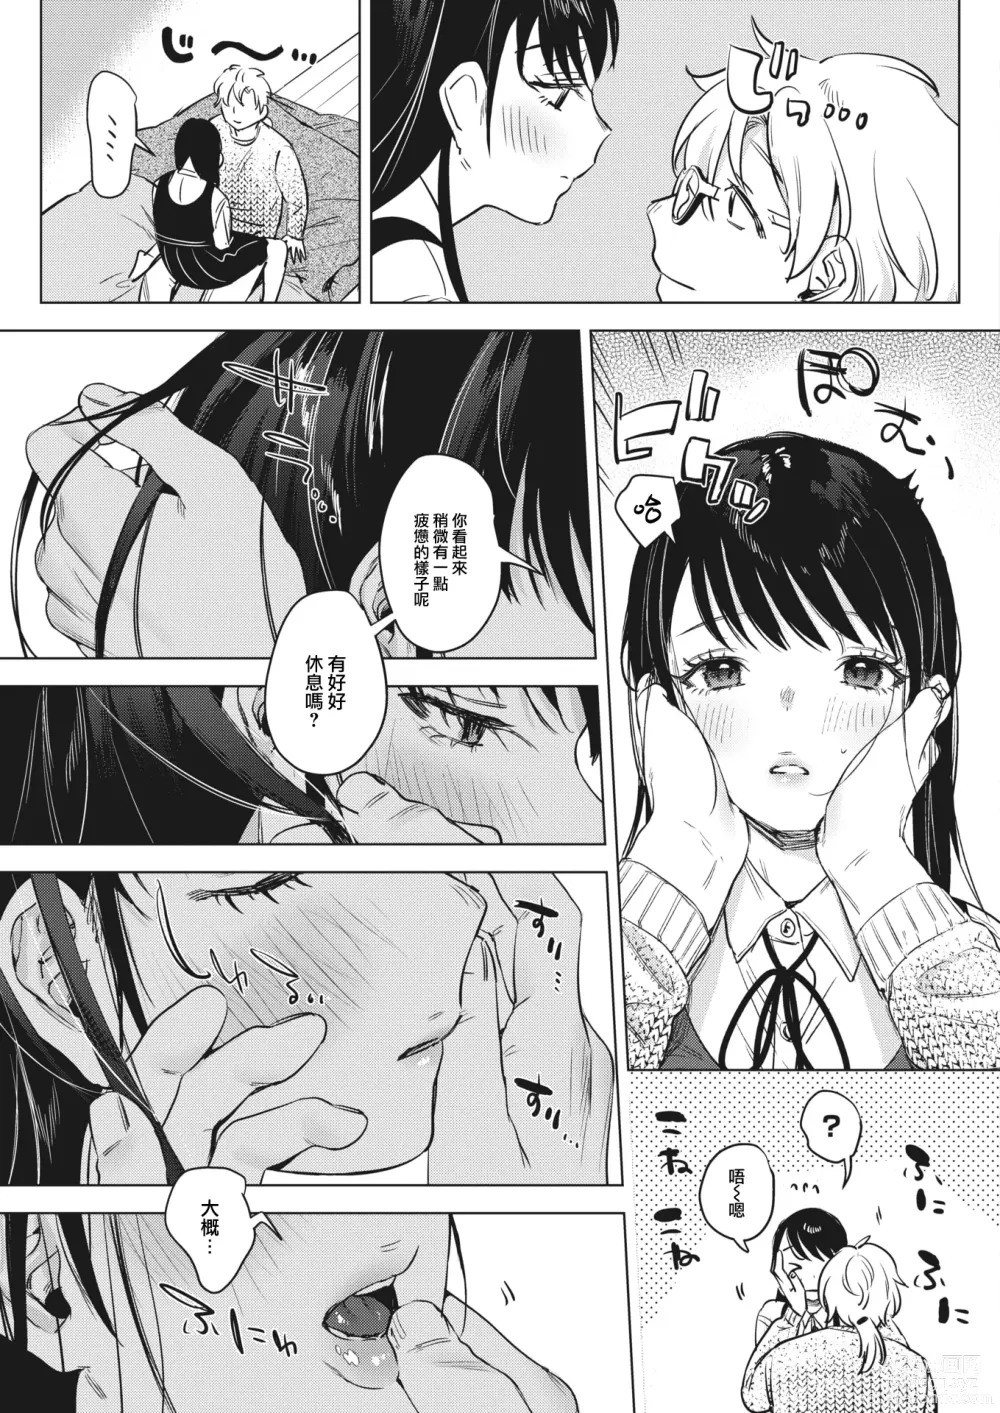 Page 6 of manga Himitsu no Hokenshitsu after